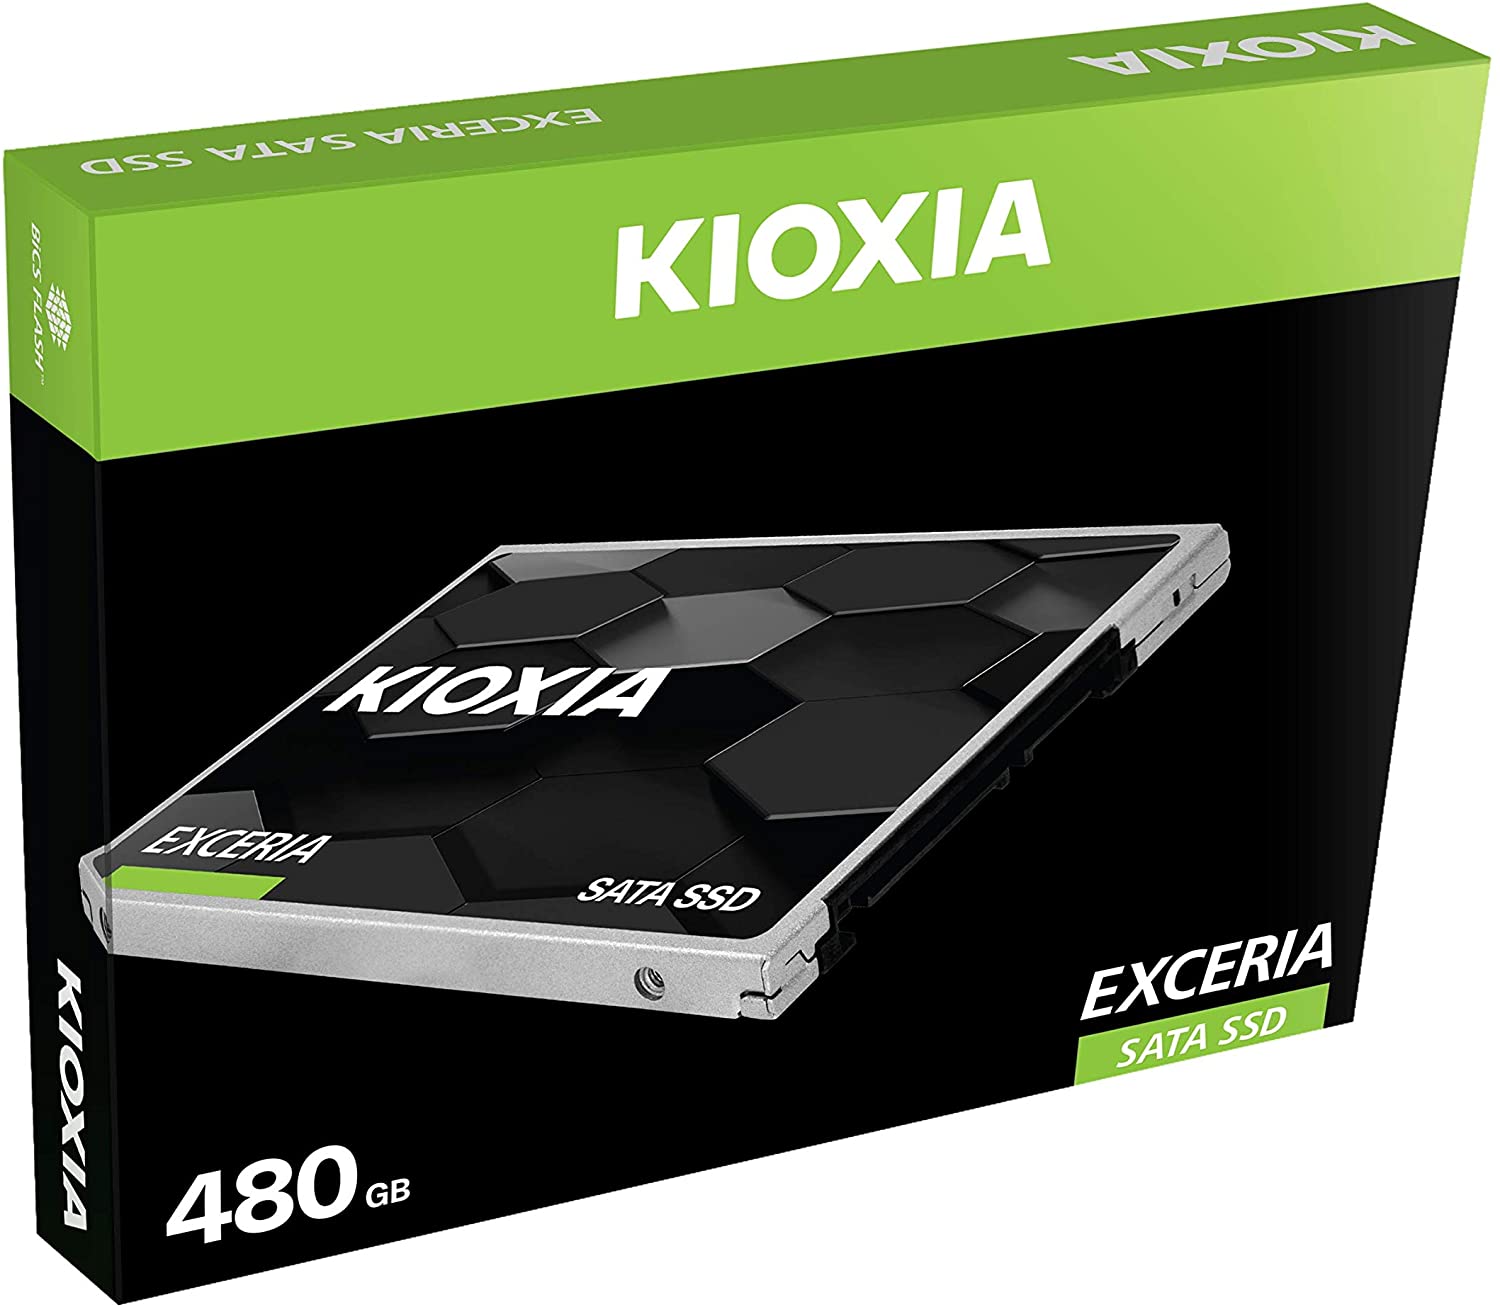 Disque SSD 480GB KIOXIA EXCERIA SERIE SATA 6GBITS 